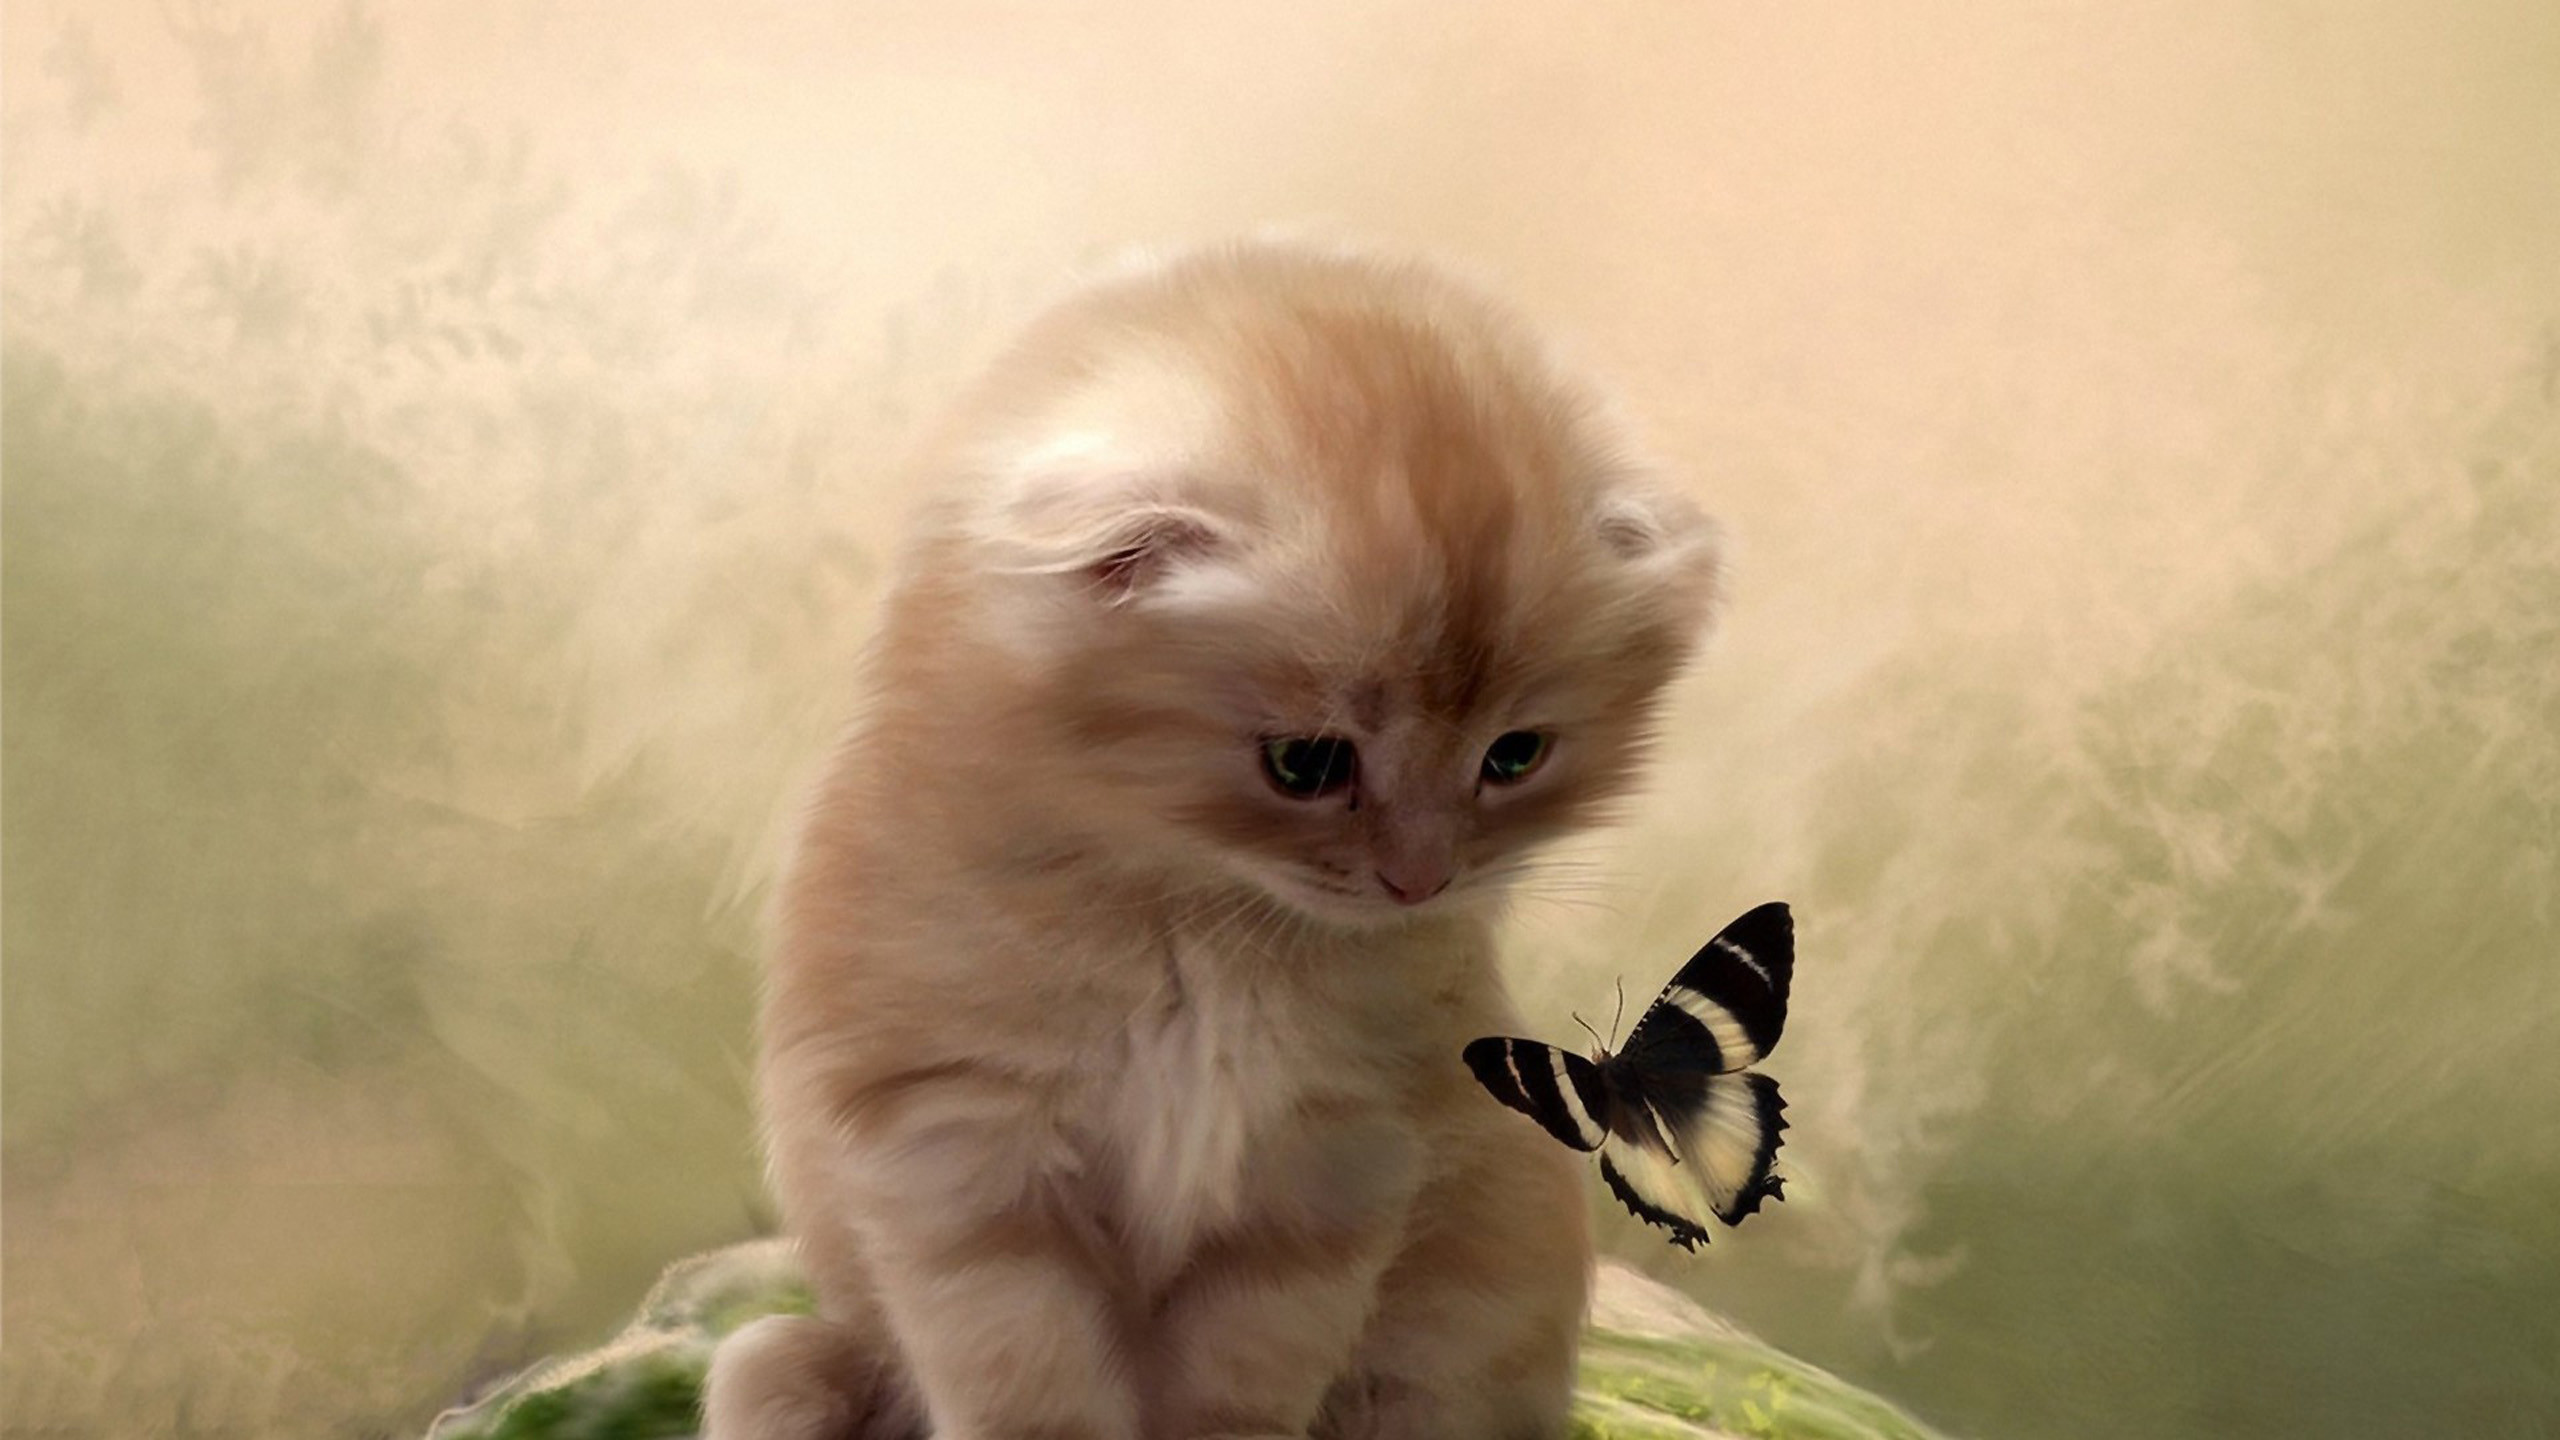 Butterflies Flutter Kitten Wallpapers Hd, Hd Desktop - Cat And Butterfly Images Hd - HD Wallpaper 